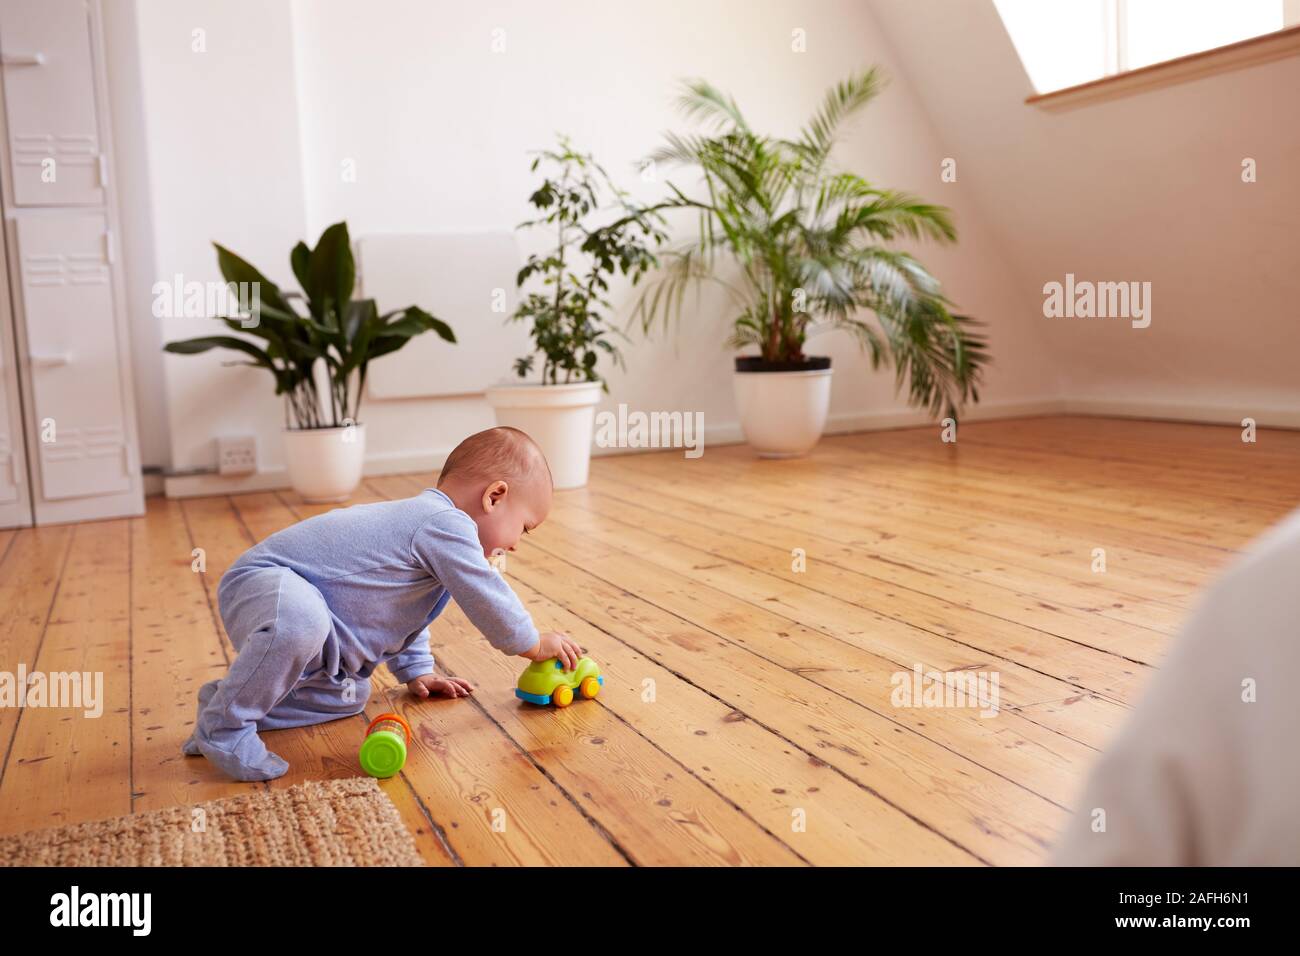 Bébé Garçon jouant avec des jouets sur le plancher à la maison Banque D'Images